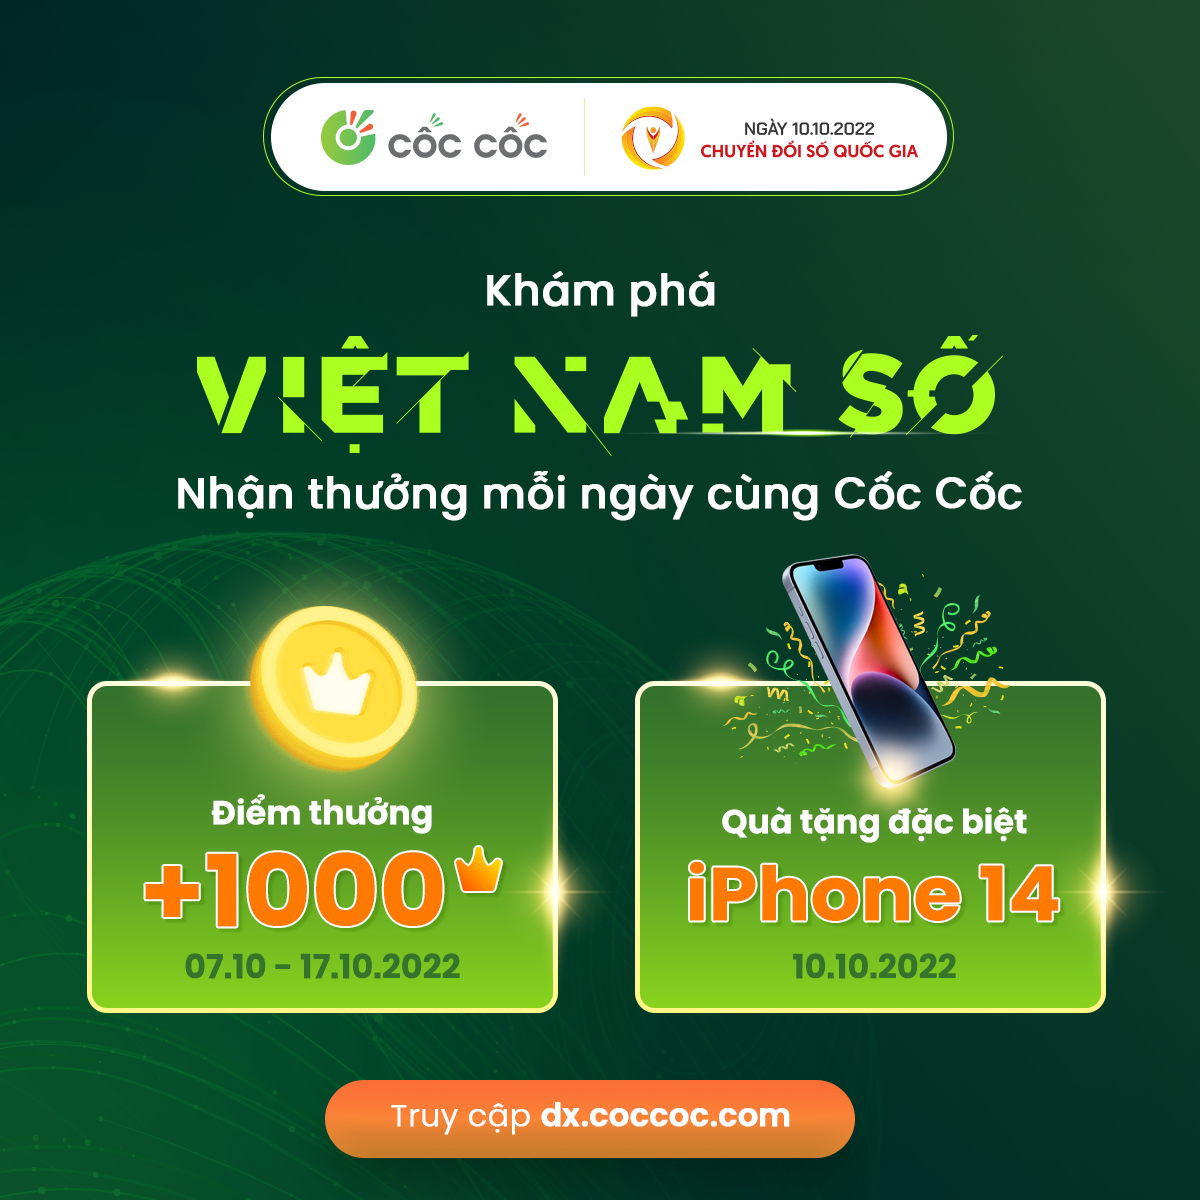 Kham pha Viet Nam so và nhan thuong moi ngay cung Coc Coc tai dx.coccoc.com